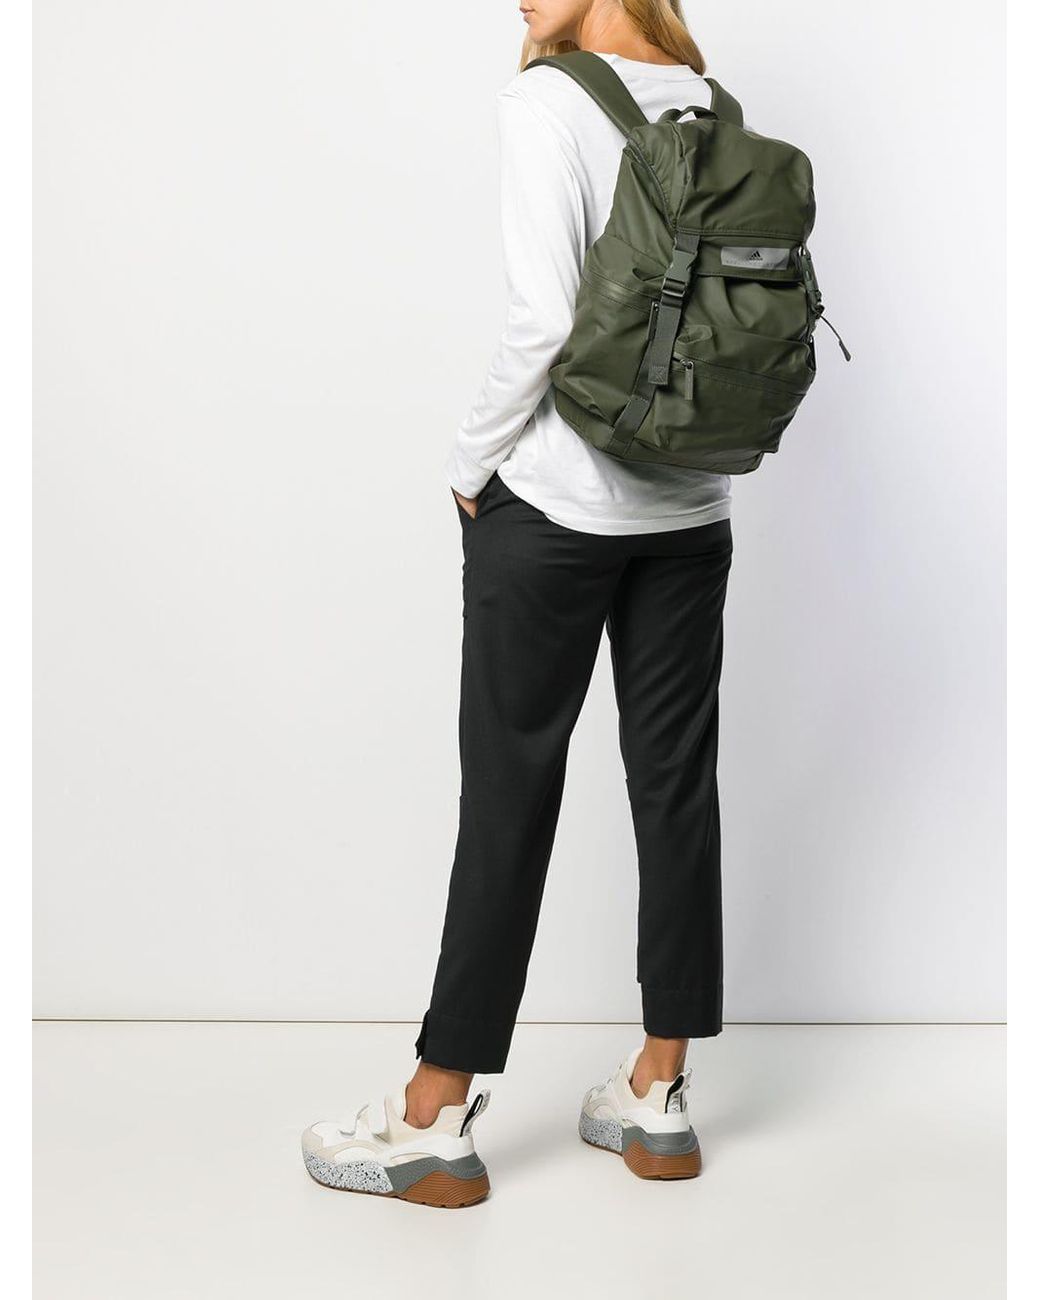 adidas By Stella McCartney Gym Backpack in Green | Lyst Australia